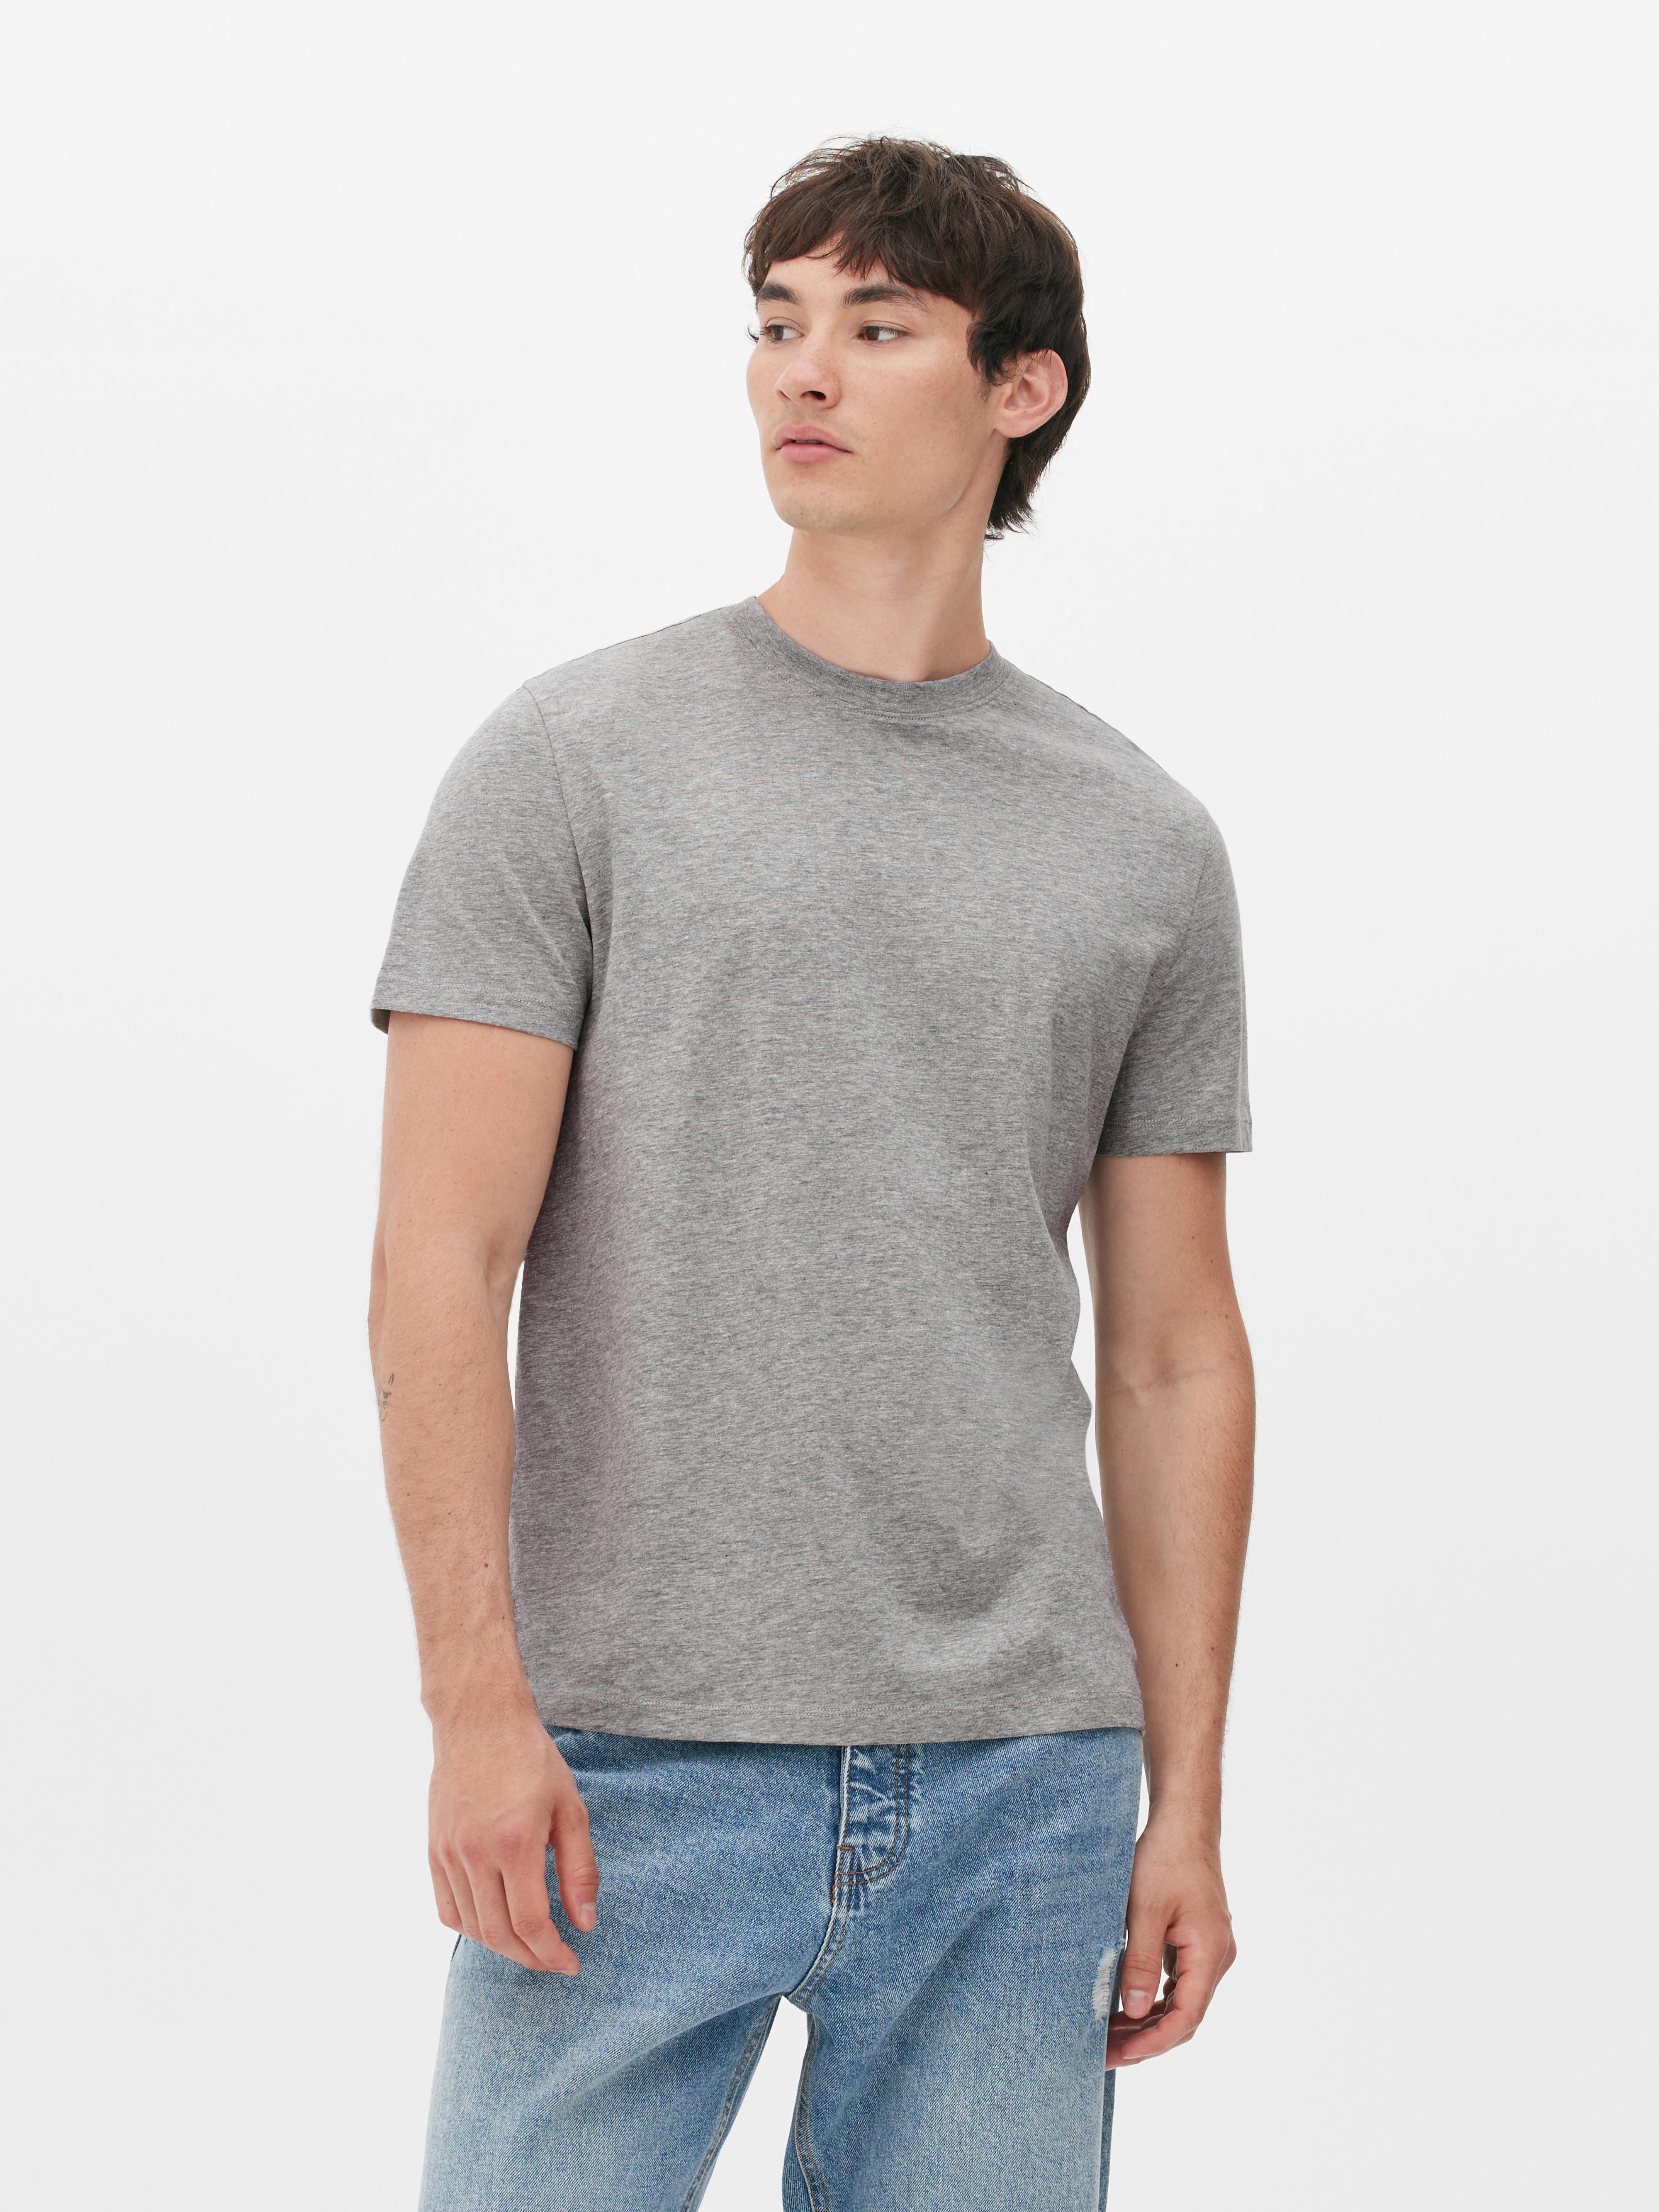 Normal Cincuenta Volverse loco Camisetas y tops para hombre | Camisetas gráficas y lisas | Primark